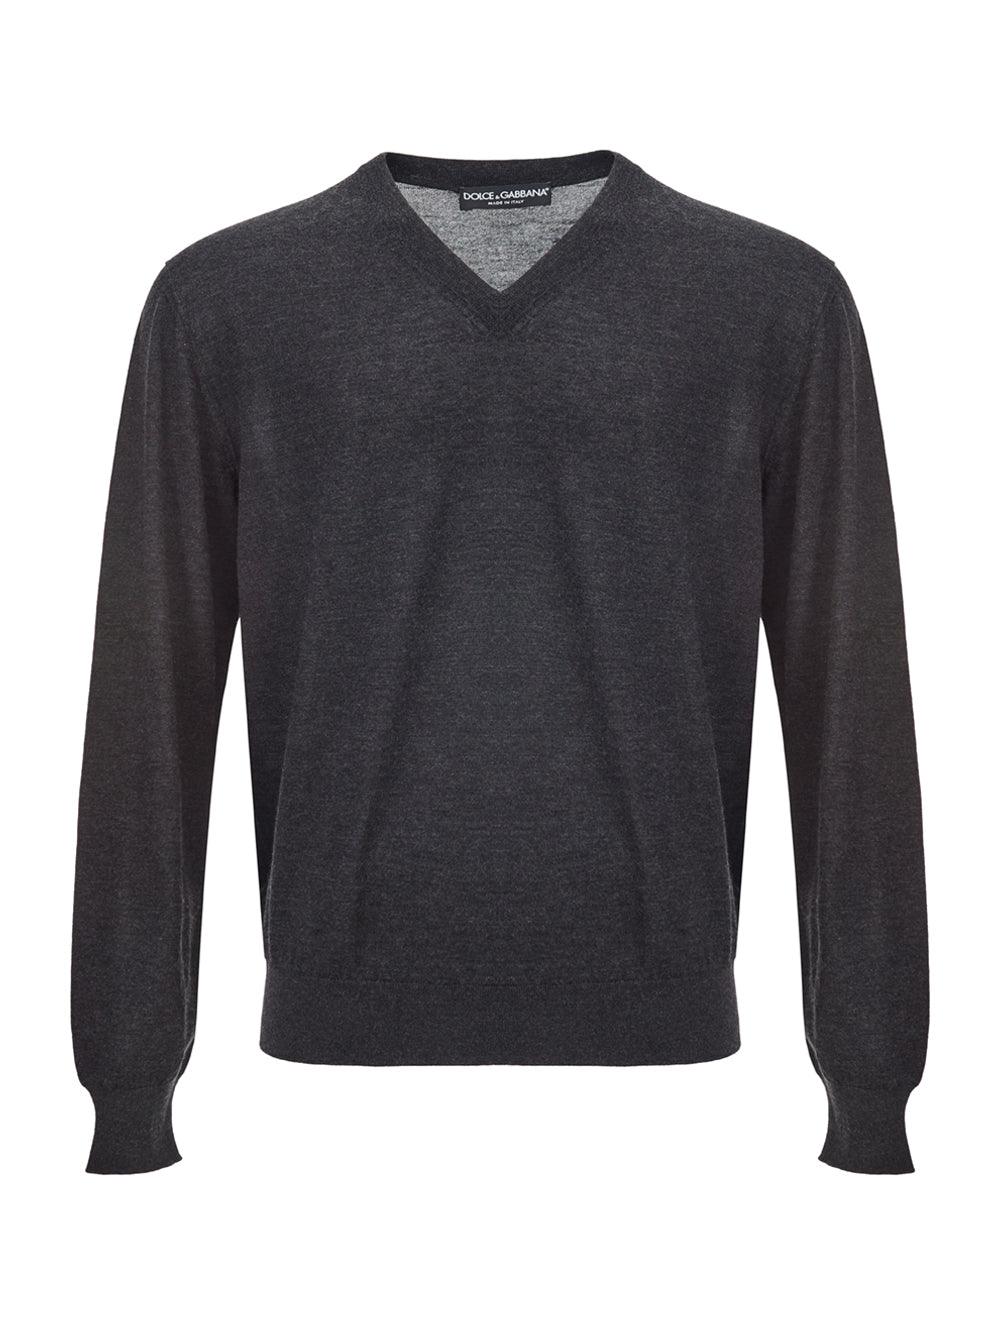 Dolce & Gabbana Dark Grey V-Neck Cashmere Sweater - Ellie Belle